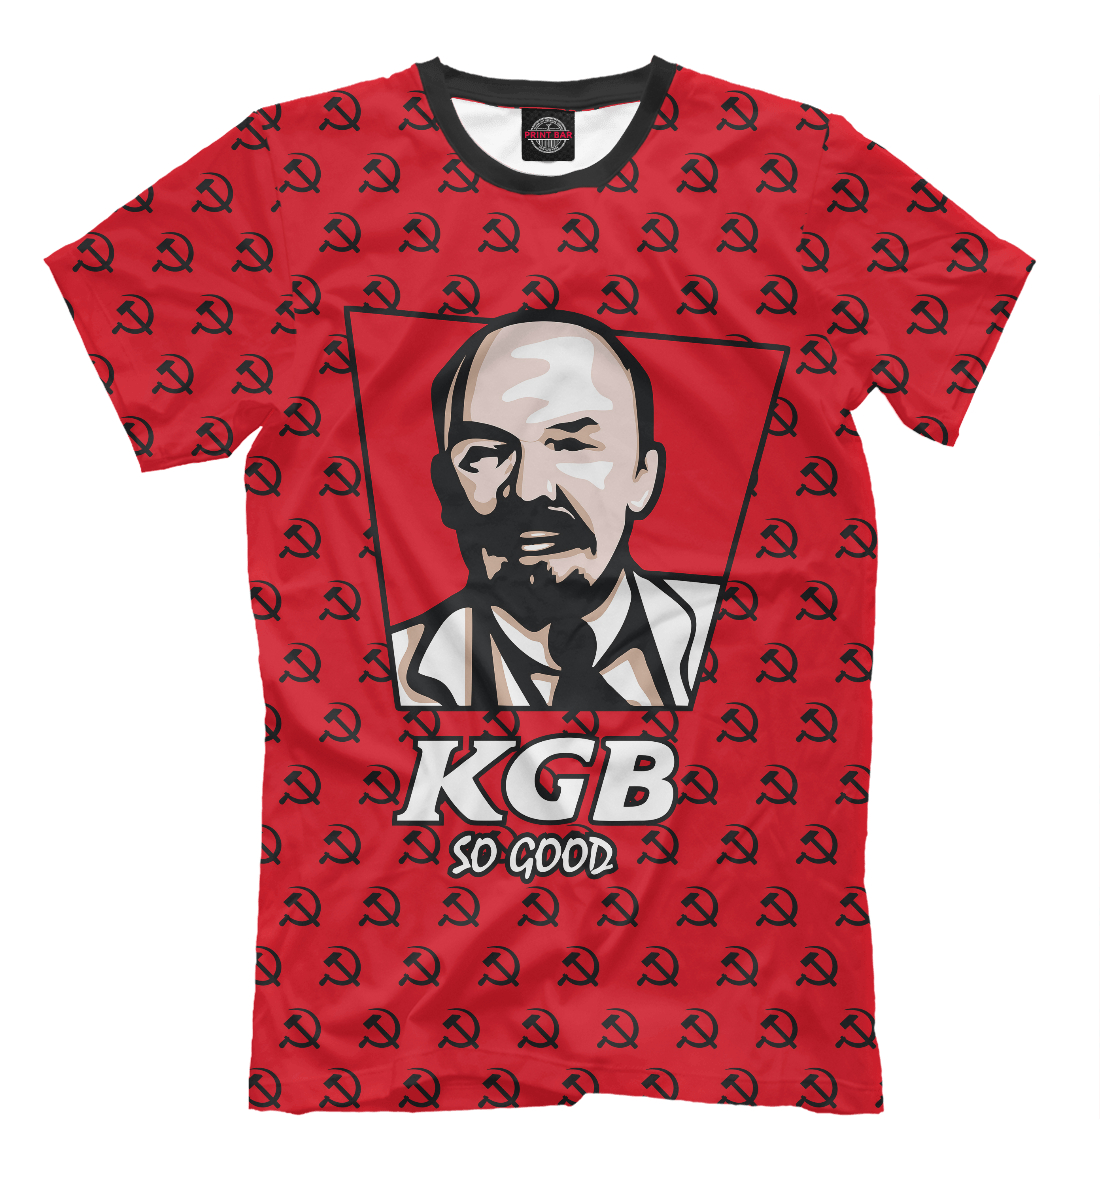 Футболка KGB So Good для мужчин, артикул: SSS-736766-fut-2mp